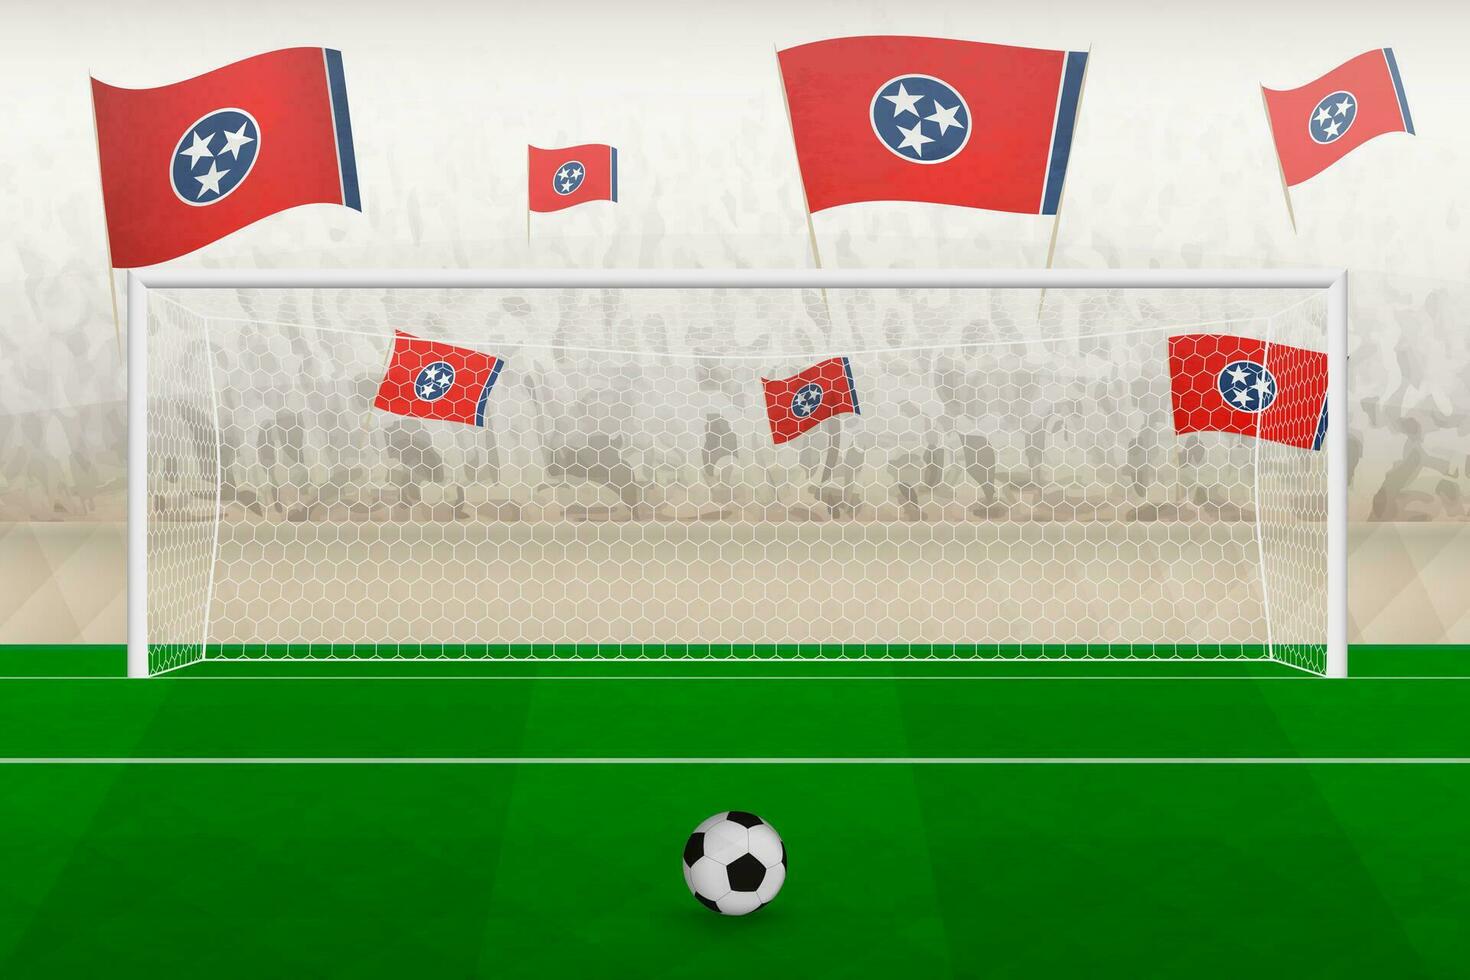 Tennessee Football équipe Ventilateurs avec drapeaux de Tennessee applaudissement sur stade, peine donner un coup concept dans une football correspondre. vecteur